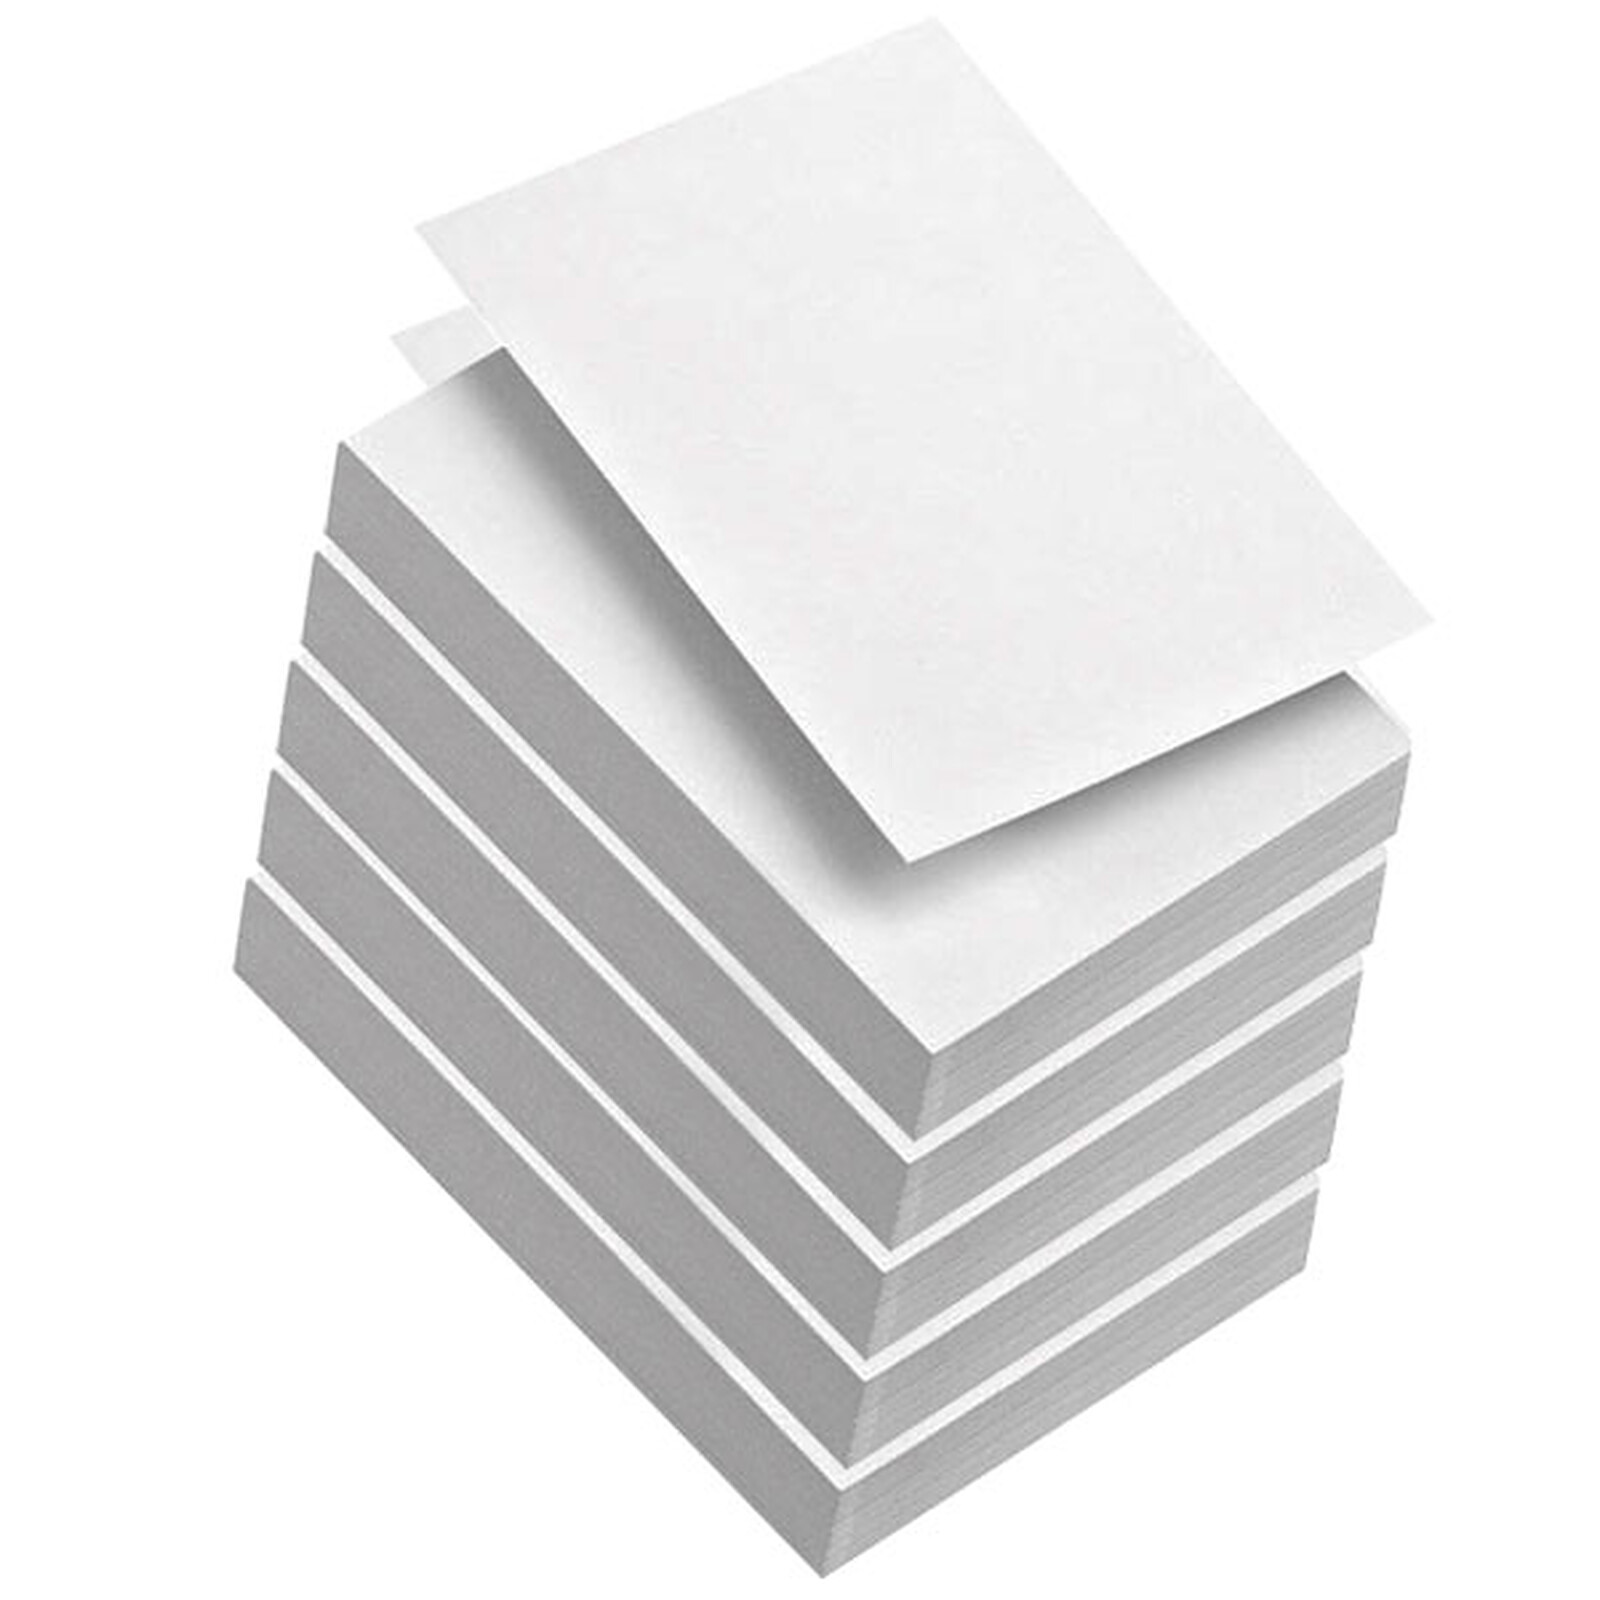 Ramettes de papier 120g - A4 pour vos impressions quotidiennes 